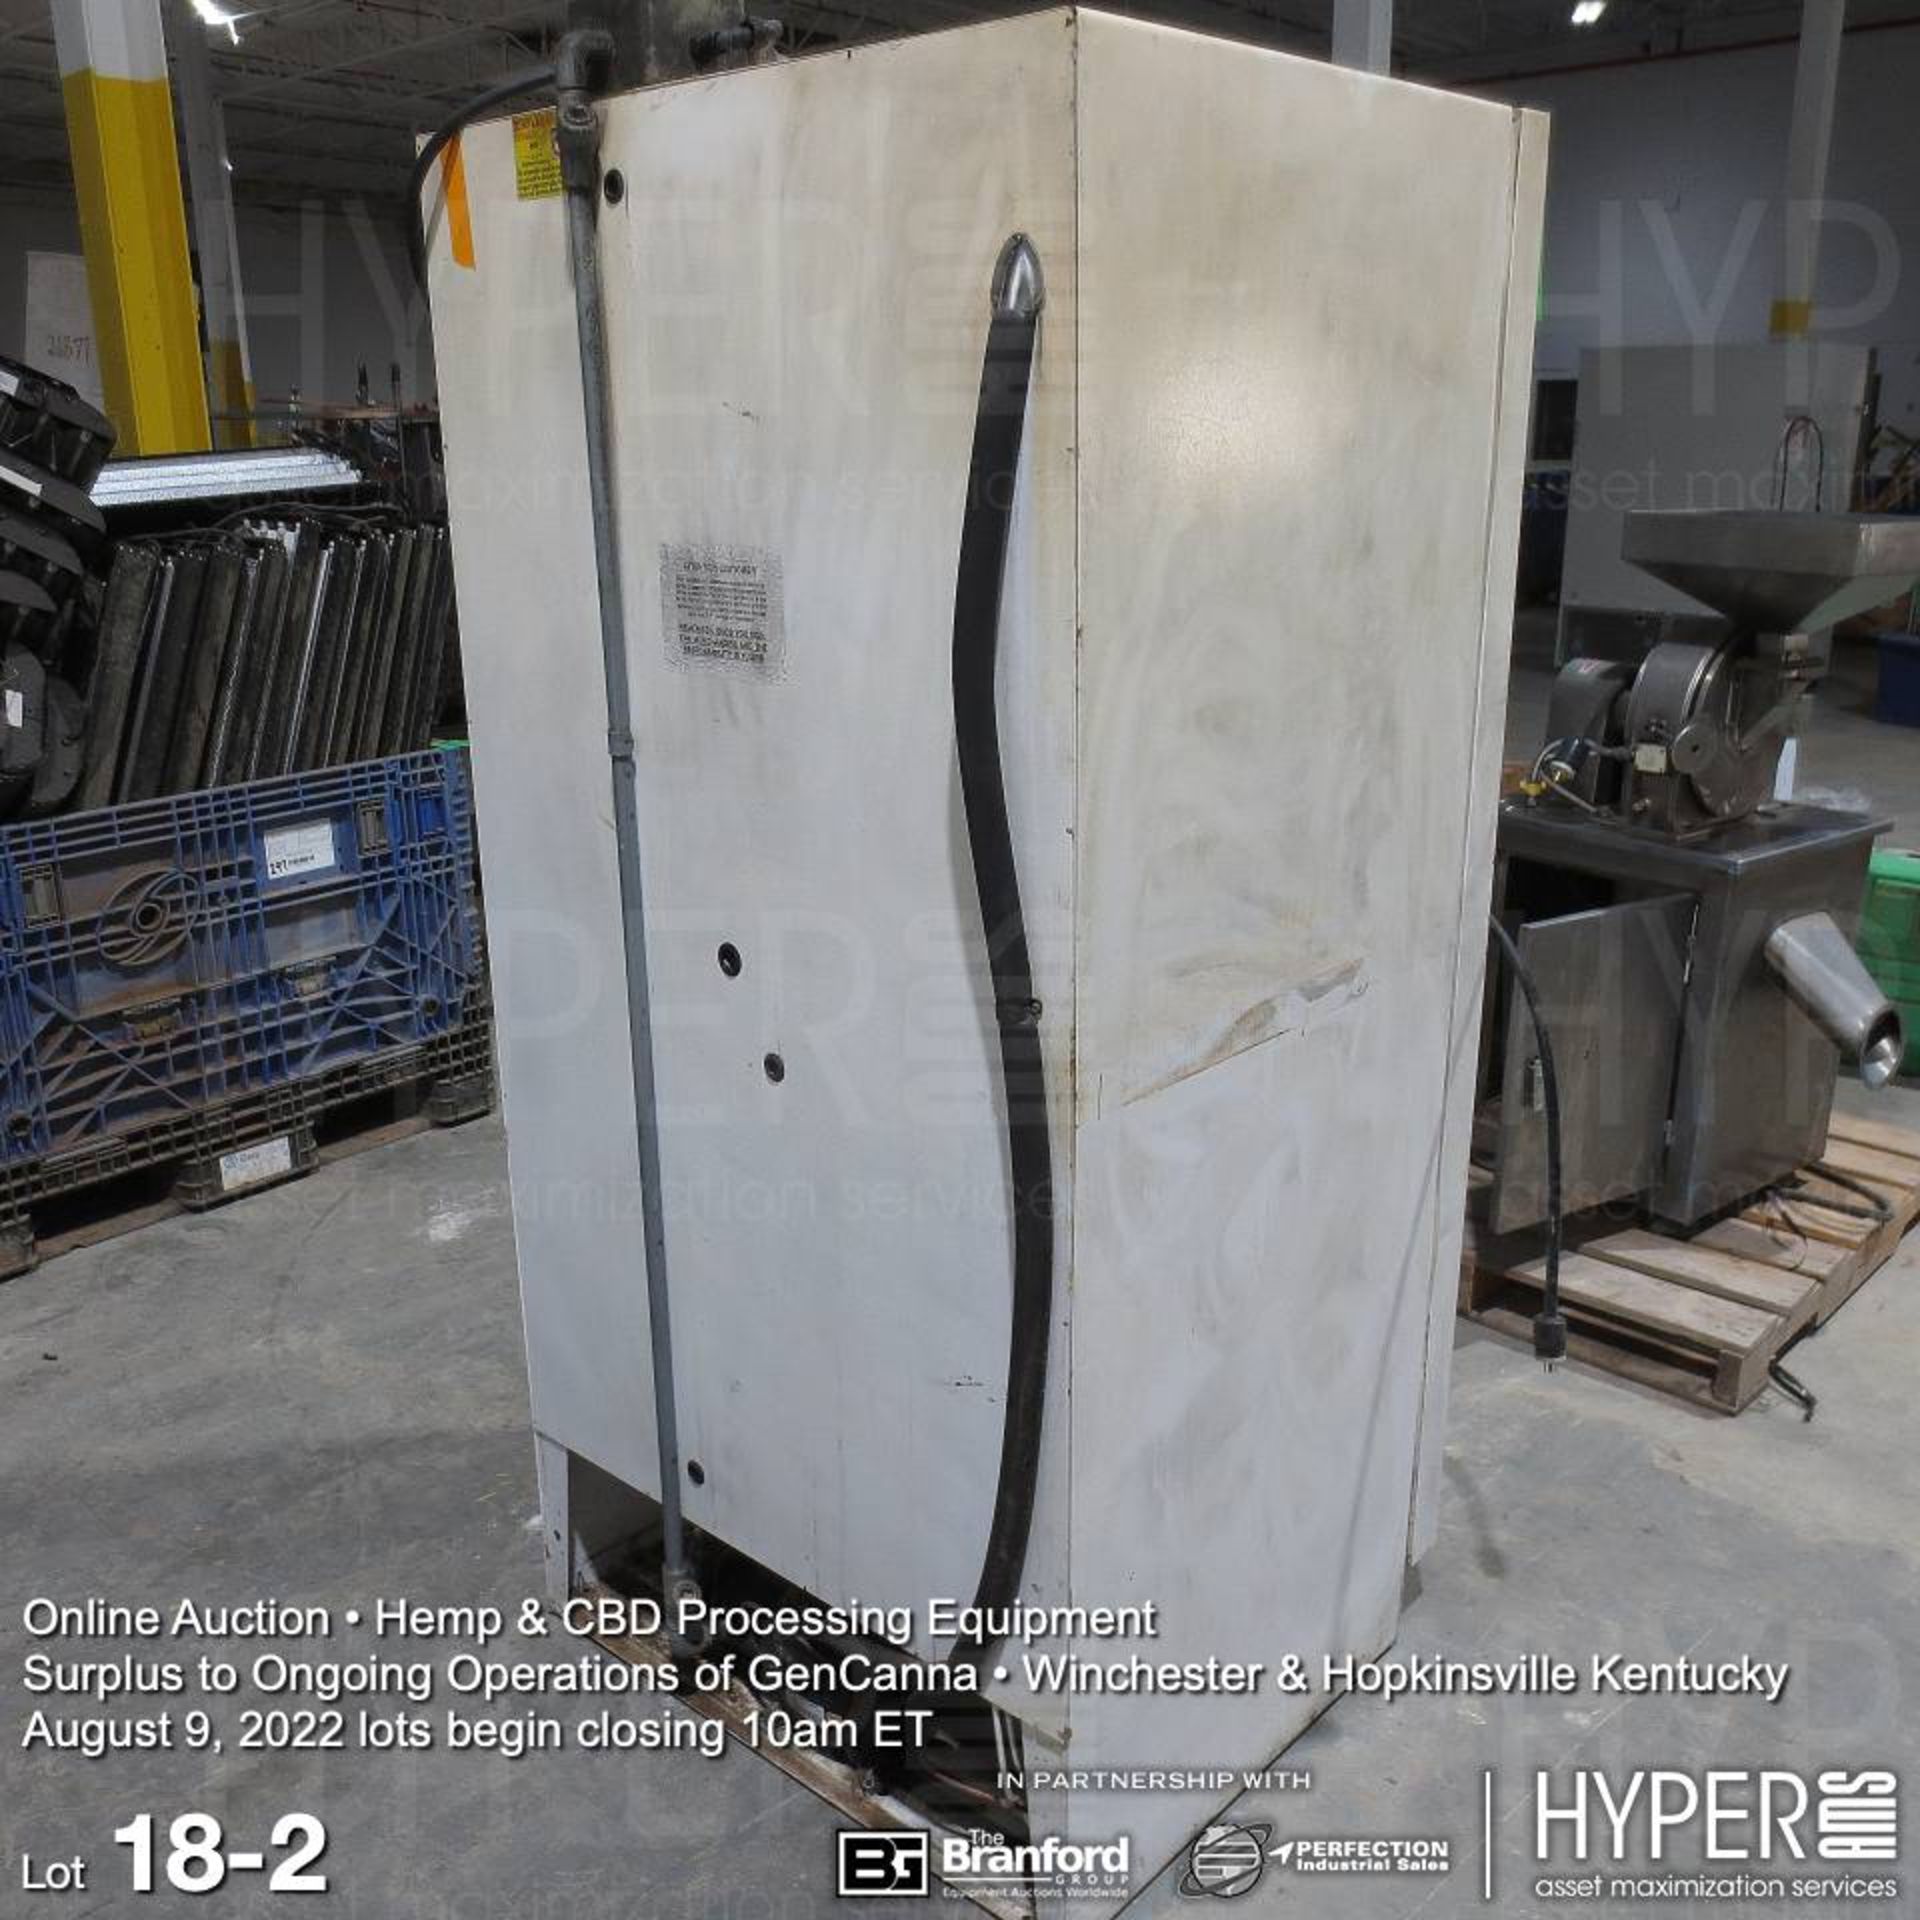 ABS ABT-EFS-30 refrigerator / freezer, 115V, 1PH, 72"H x 35"W x 31"D - Image 2 of 3